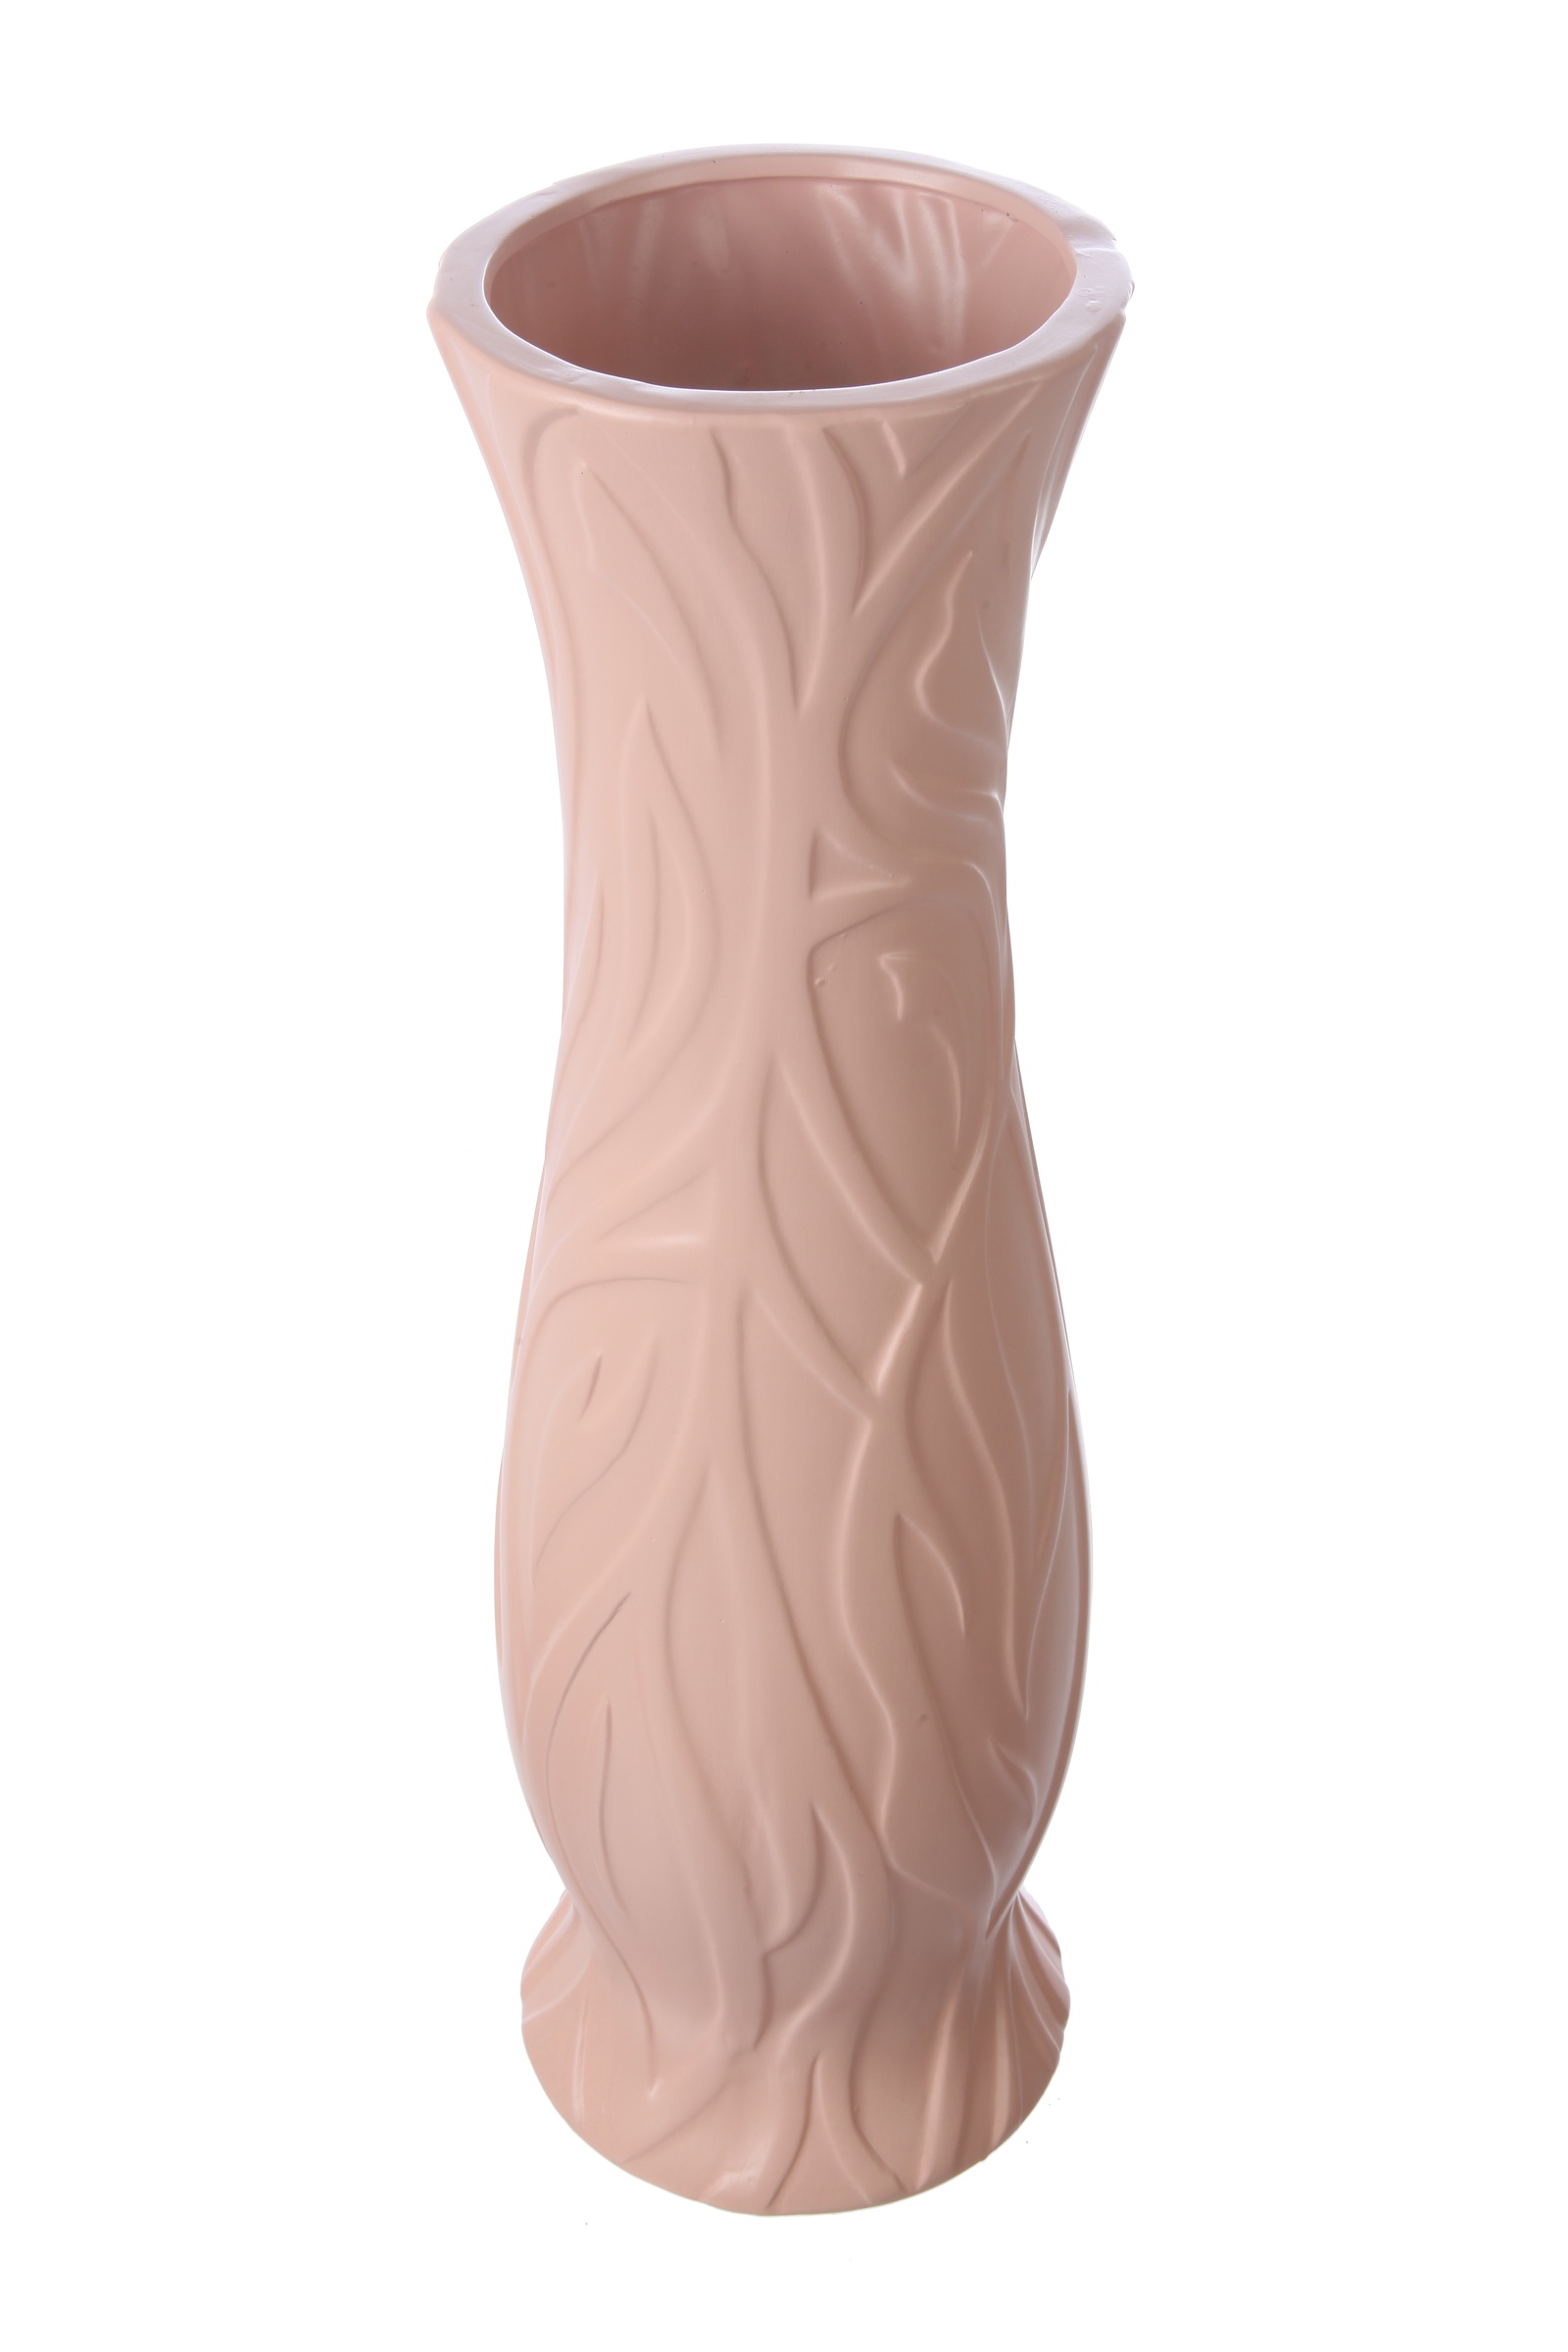 Ваза IsmatDecor Керамическая ваза, VB-91 розовый, Керамика